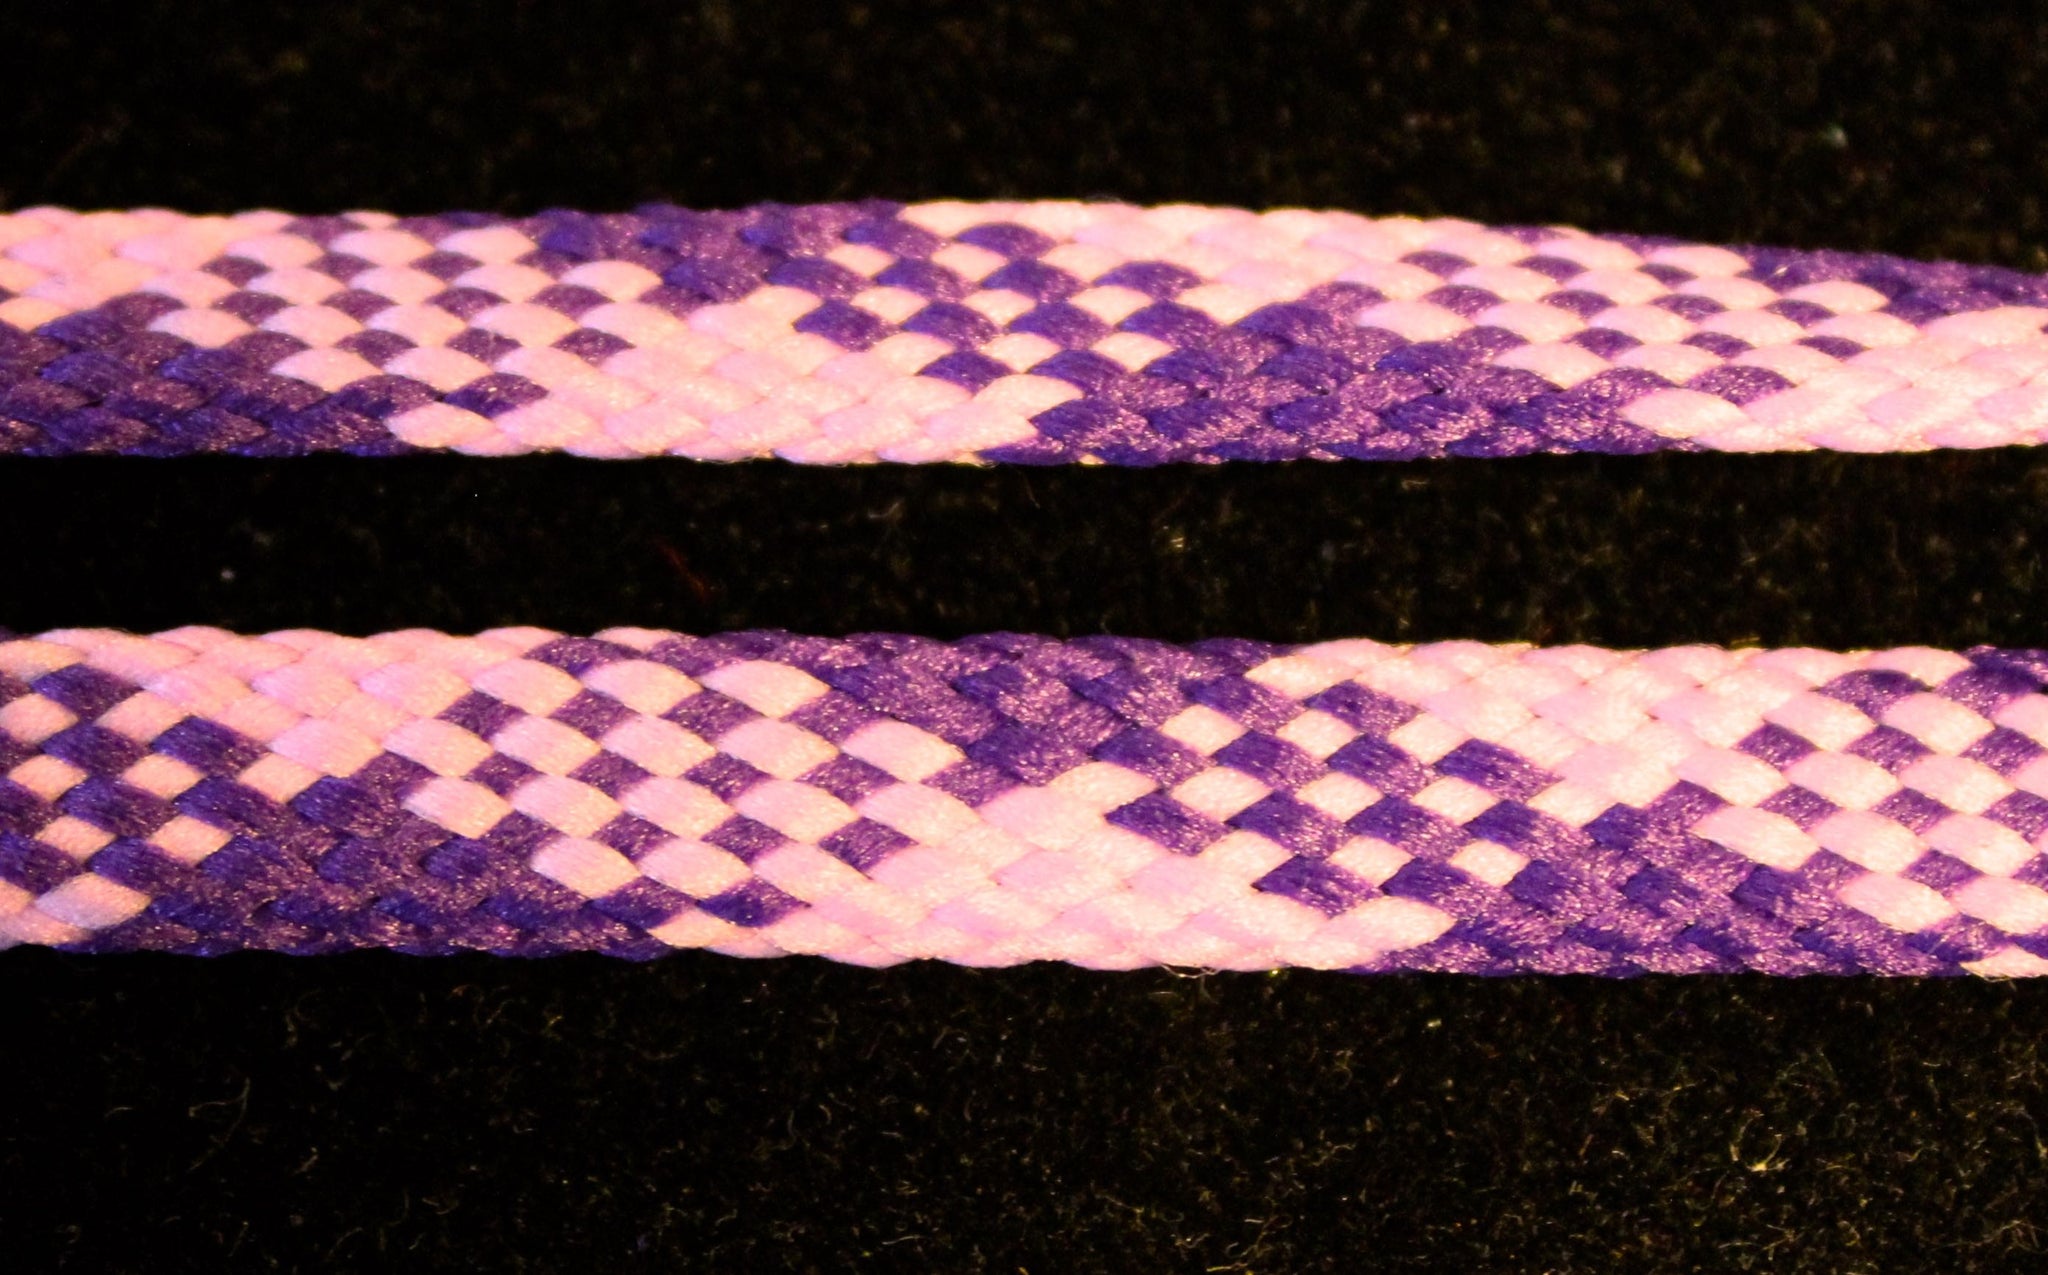 purple shoelaces